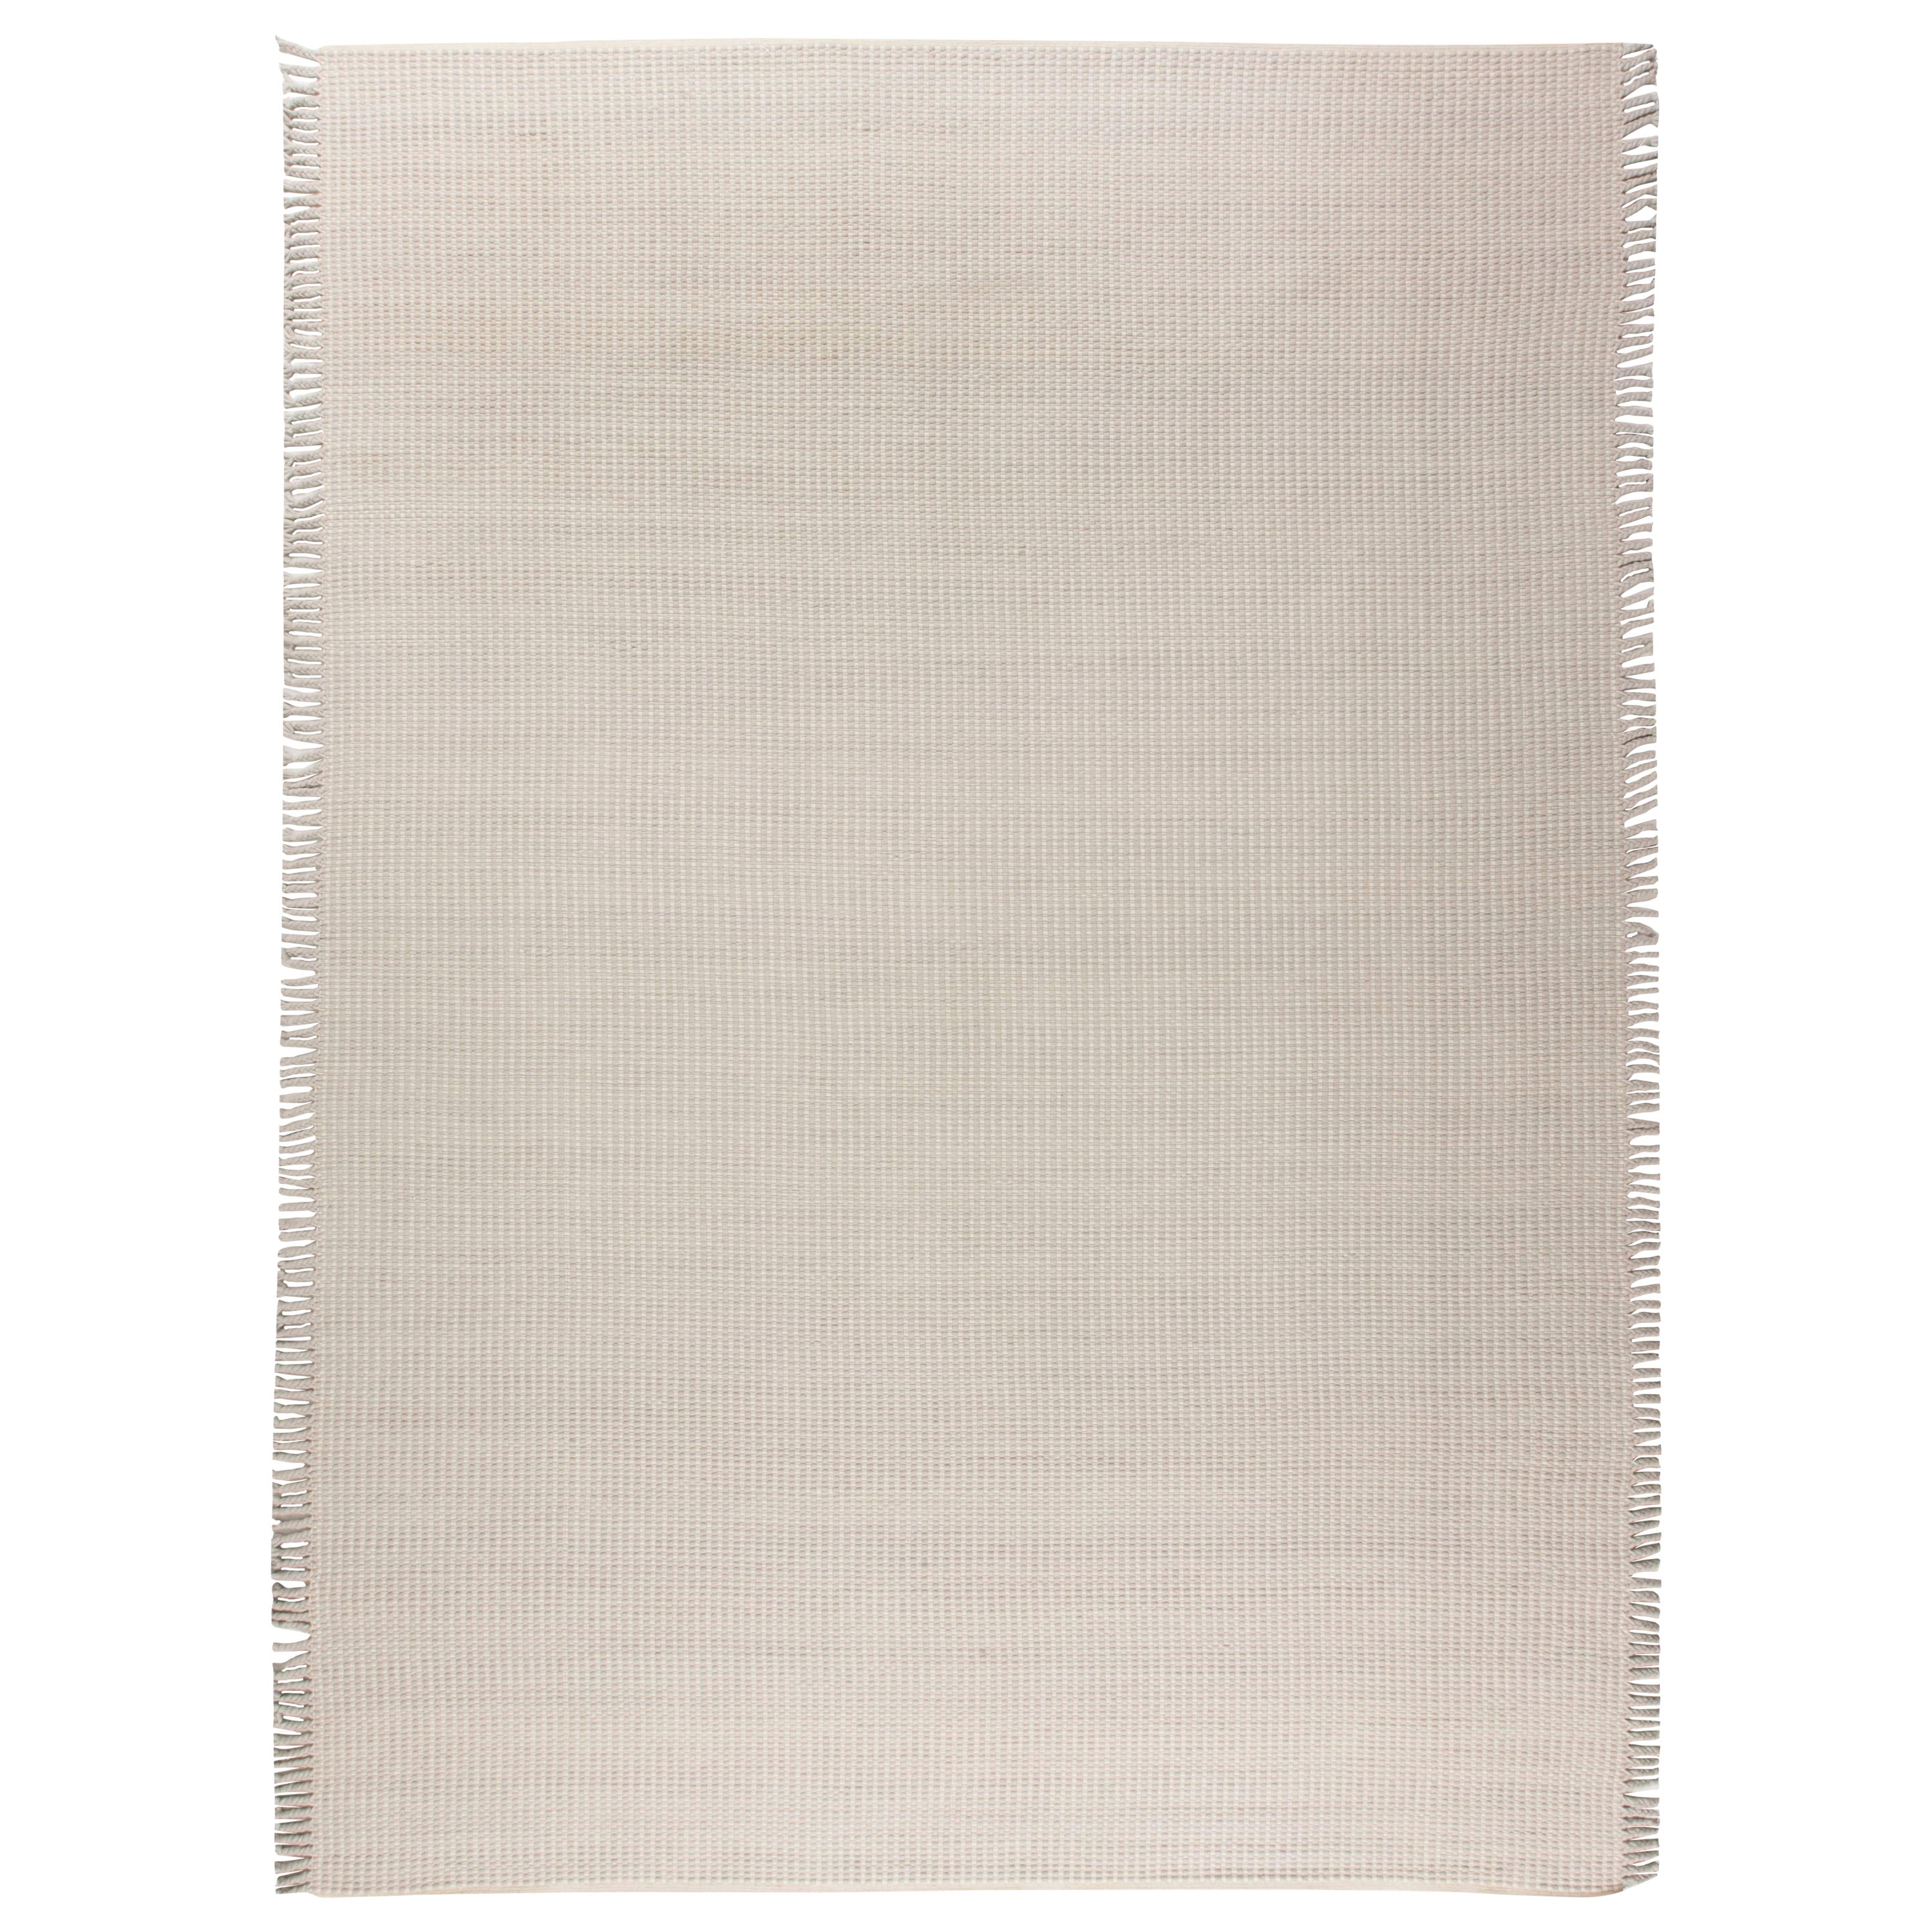 Contemporary Solid Beige, Gray Flat-Weave Wool Rug by Doris Leslie Blau